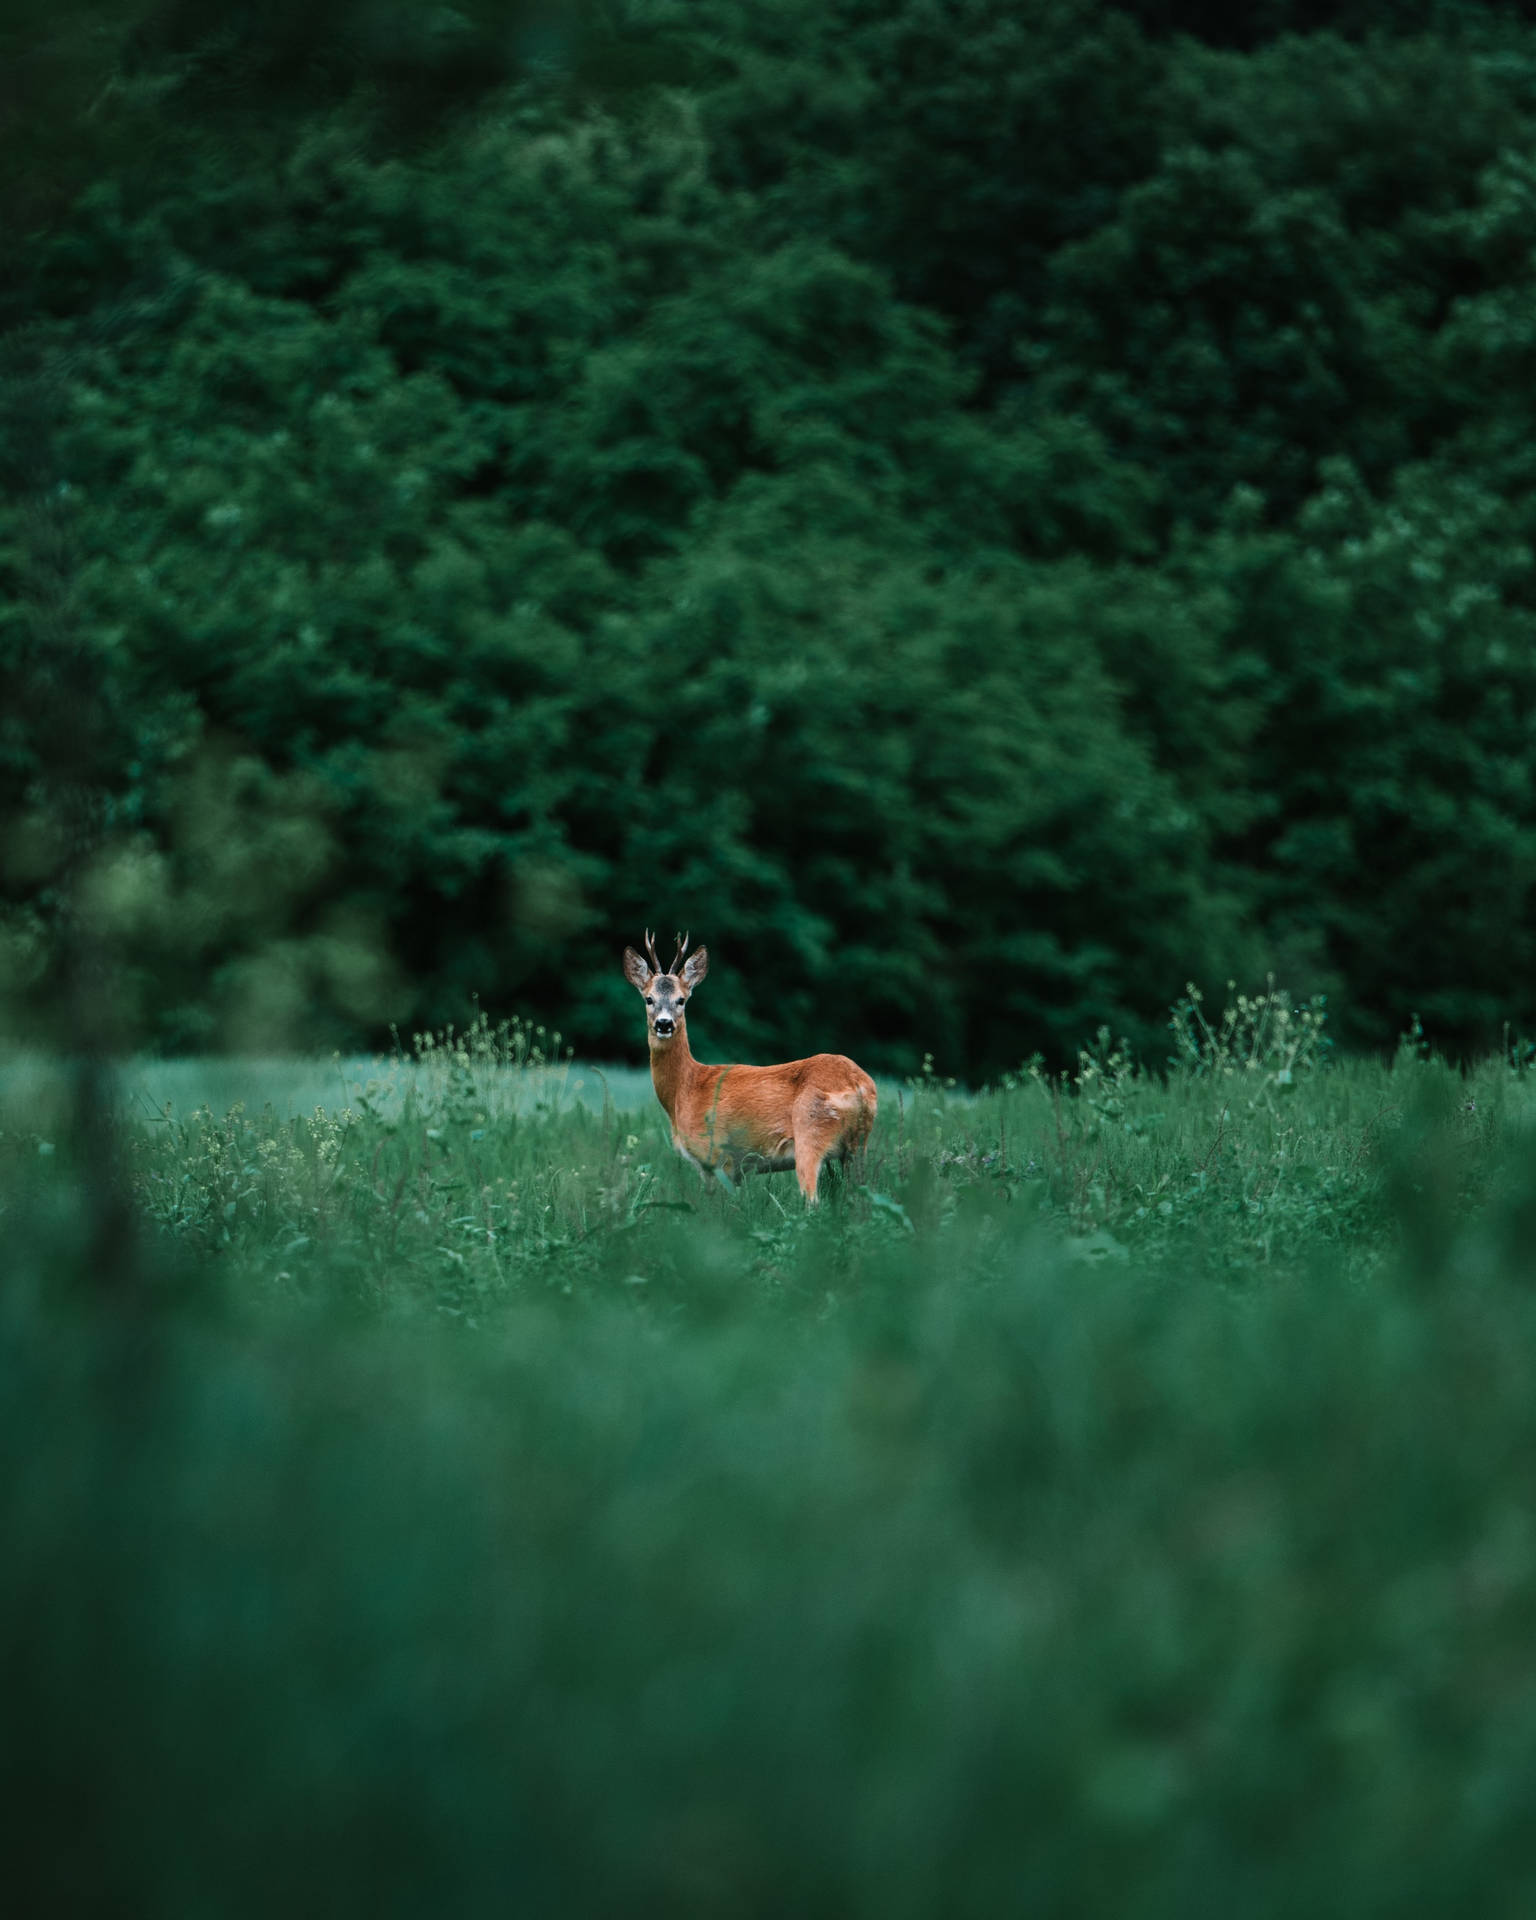 Doe Deer In Grass Field Background